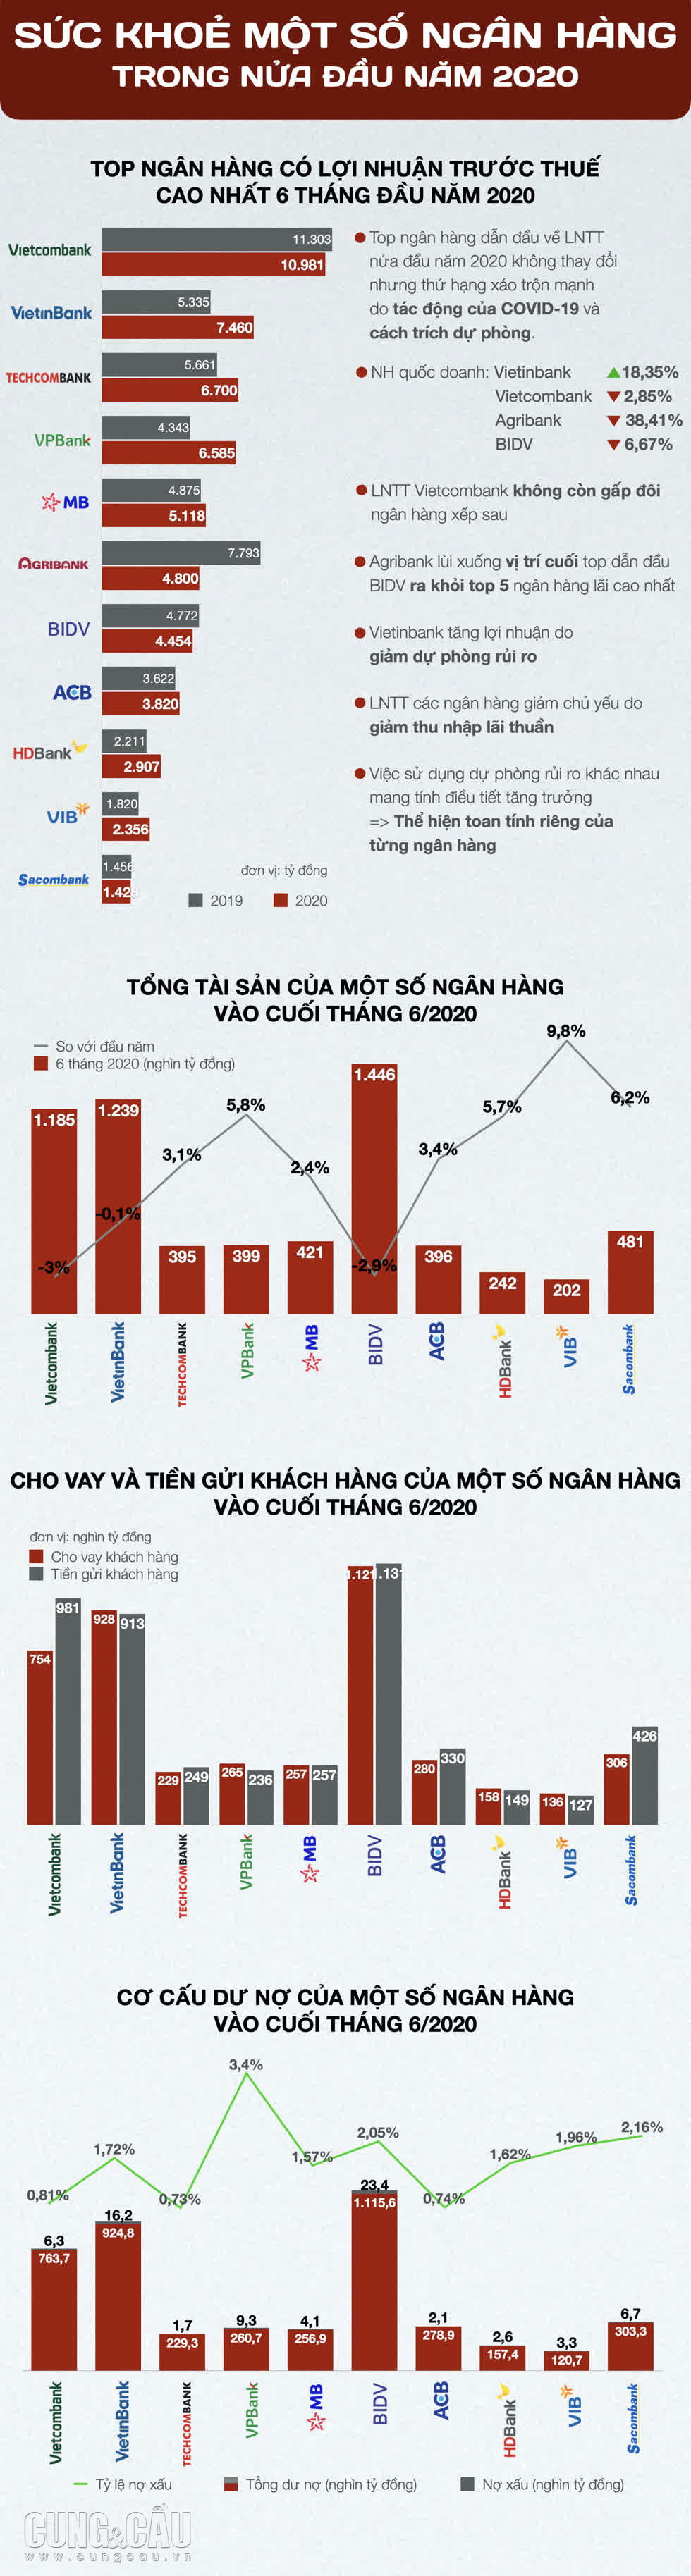 Sức khoẻ của một số ngân hàng Việt Nam trong 6 tháng đầu năm 2020.